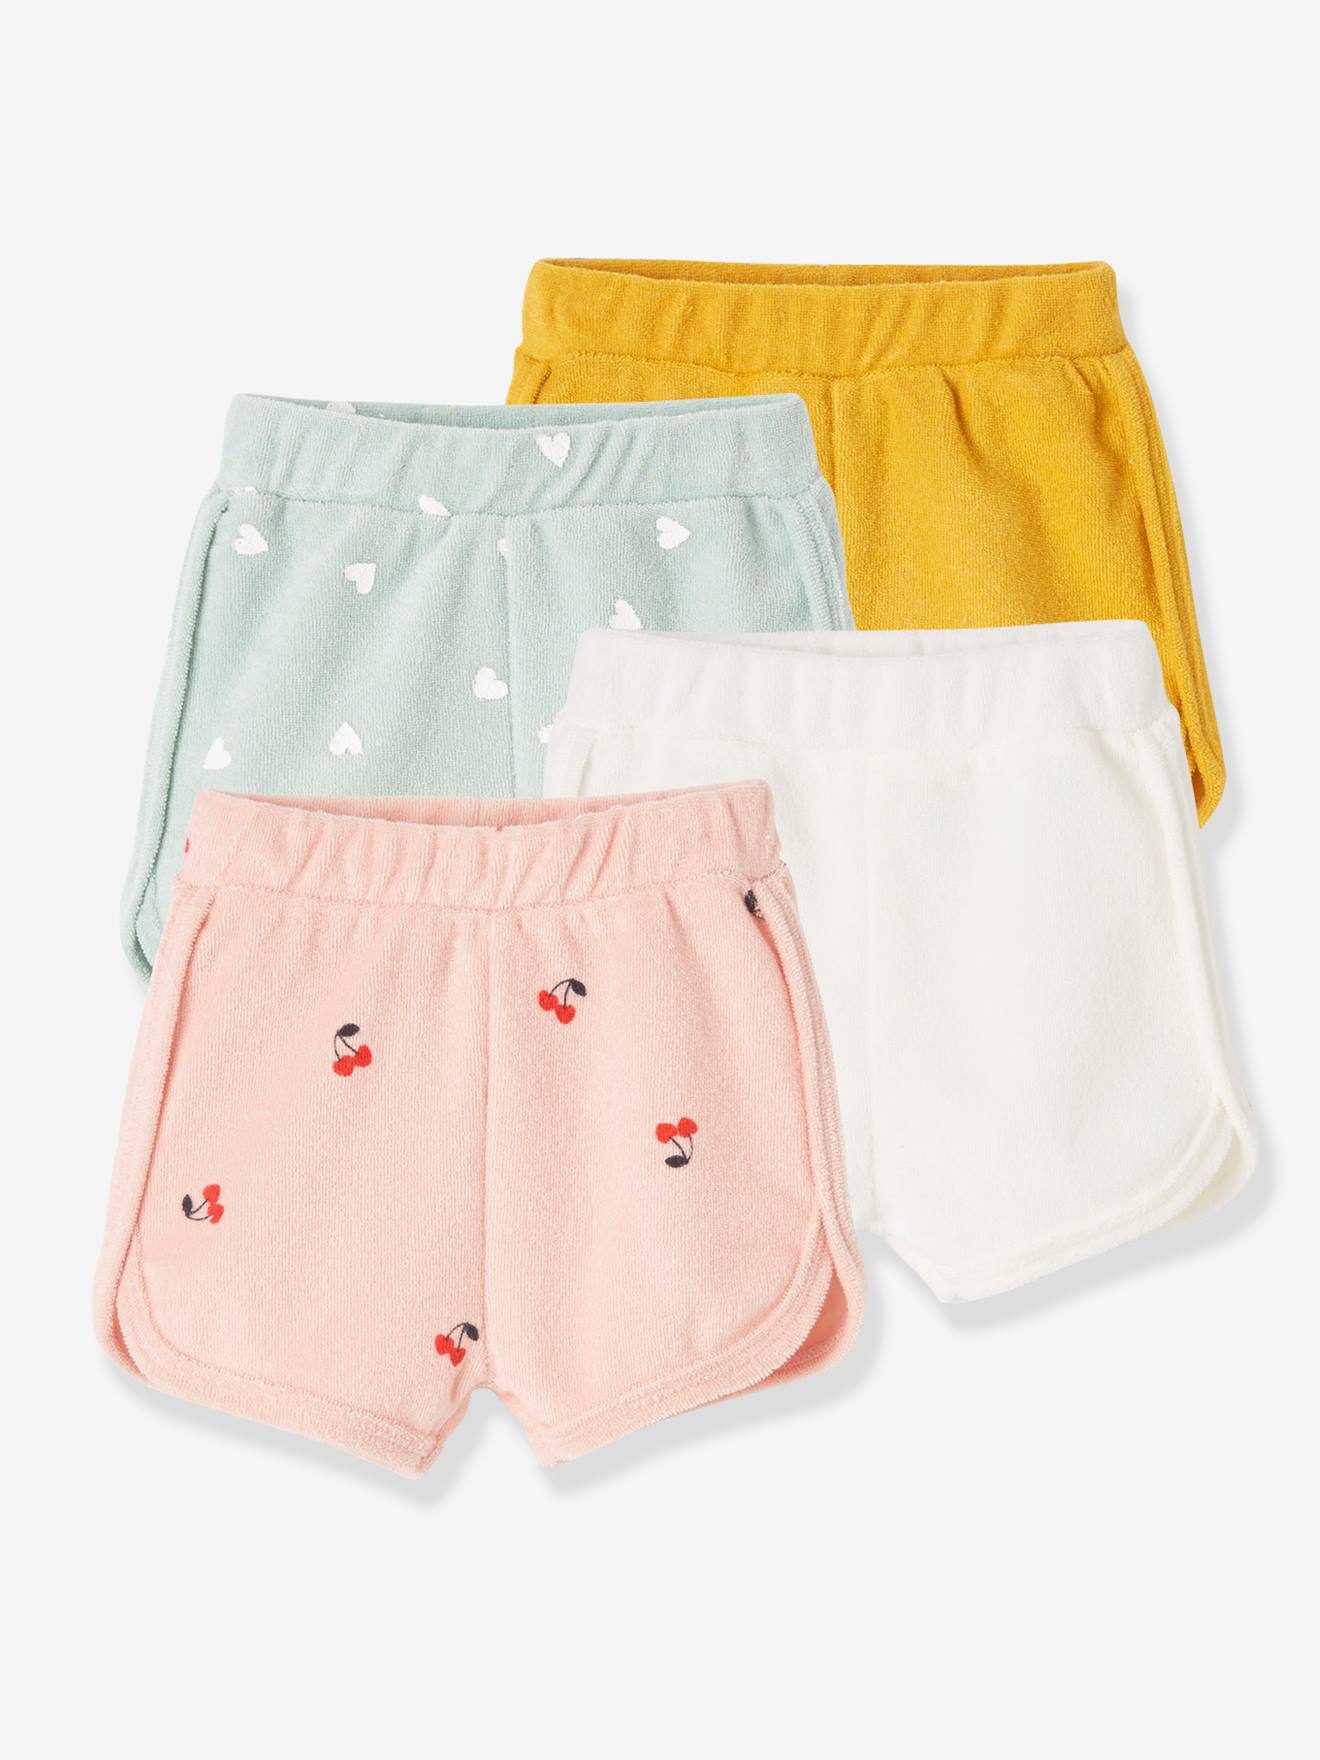 VERTBAUDET Pack de 4 shorts de felpa para bebé amarillo oscuro bicolor/multic